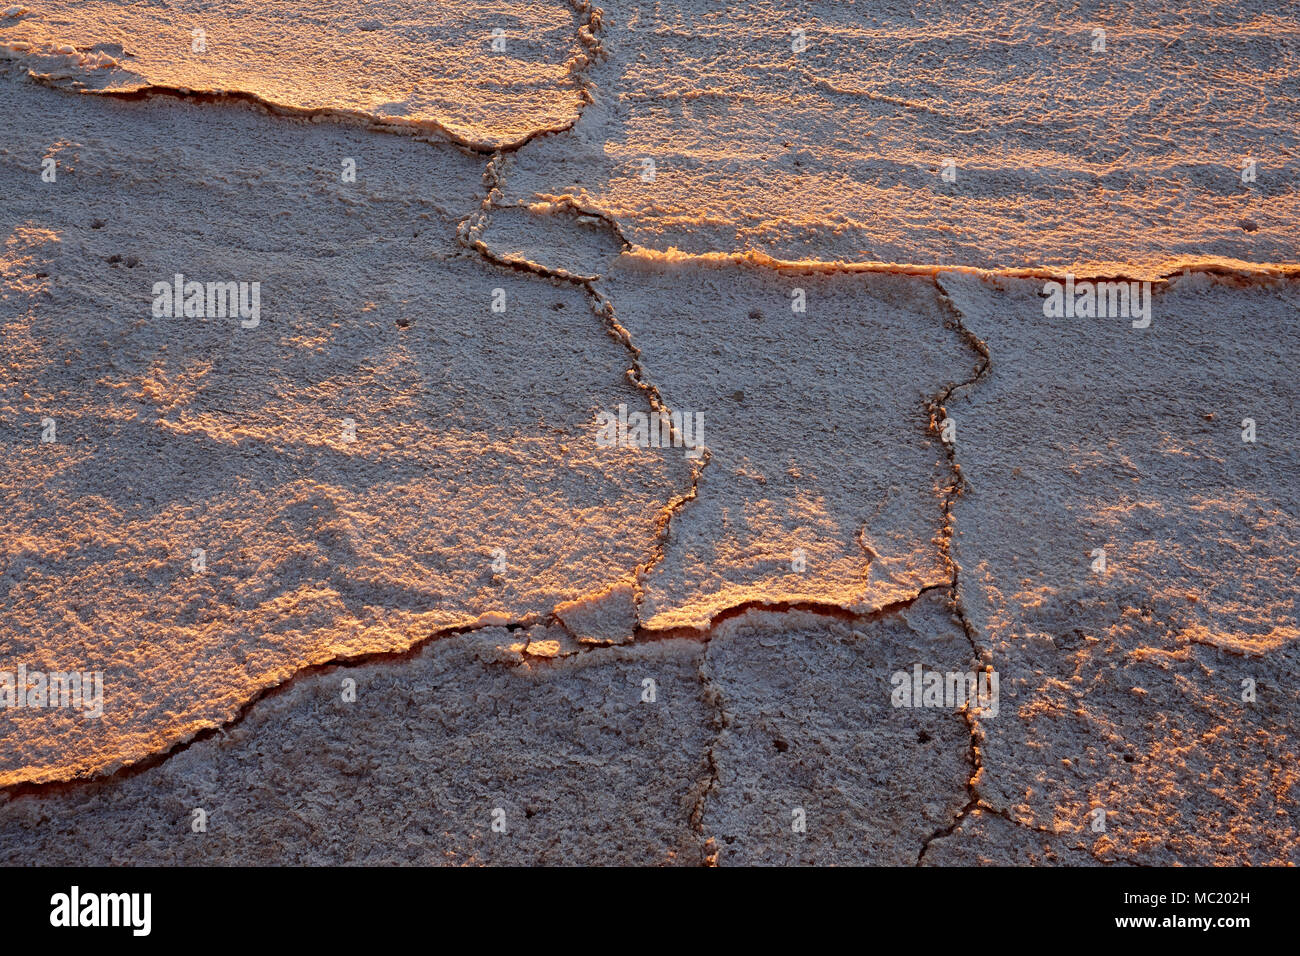 Oberfläche der trockenen Salt Lake in der Nähe von Mildura. Foto am Ende eines trockenen Sommers genommen. North West, Victoria, Australien. Stockfoto